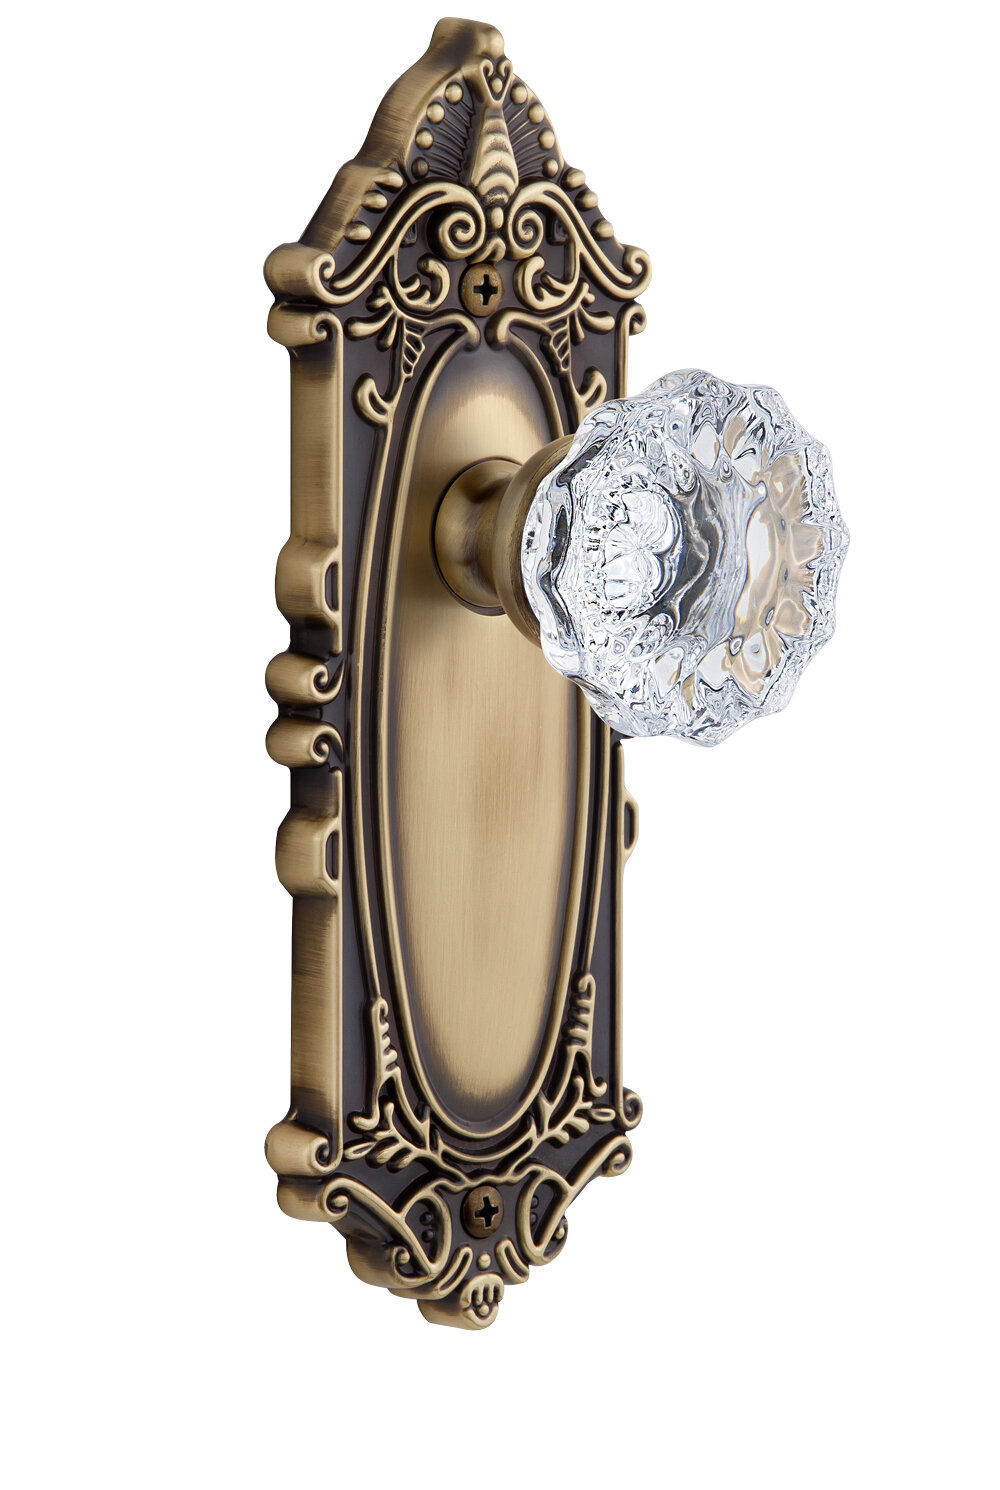 Pair of Oval Victorian Doorknobs